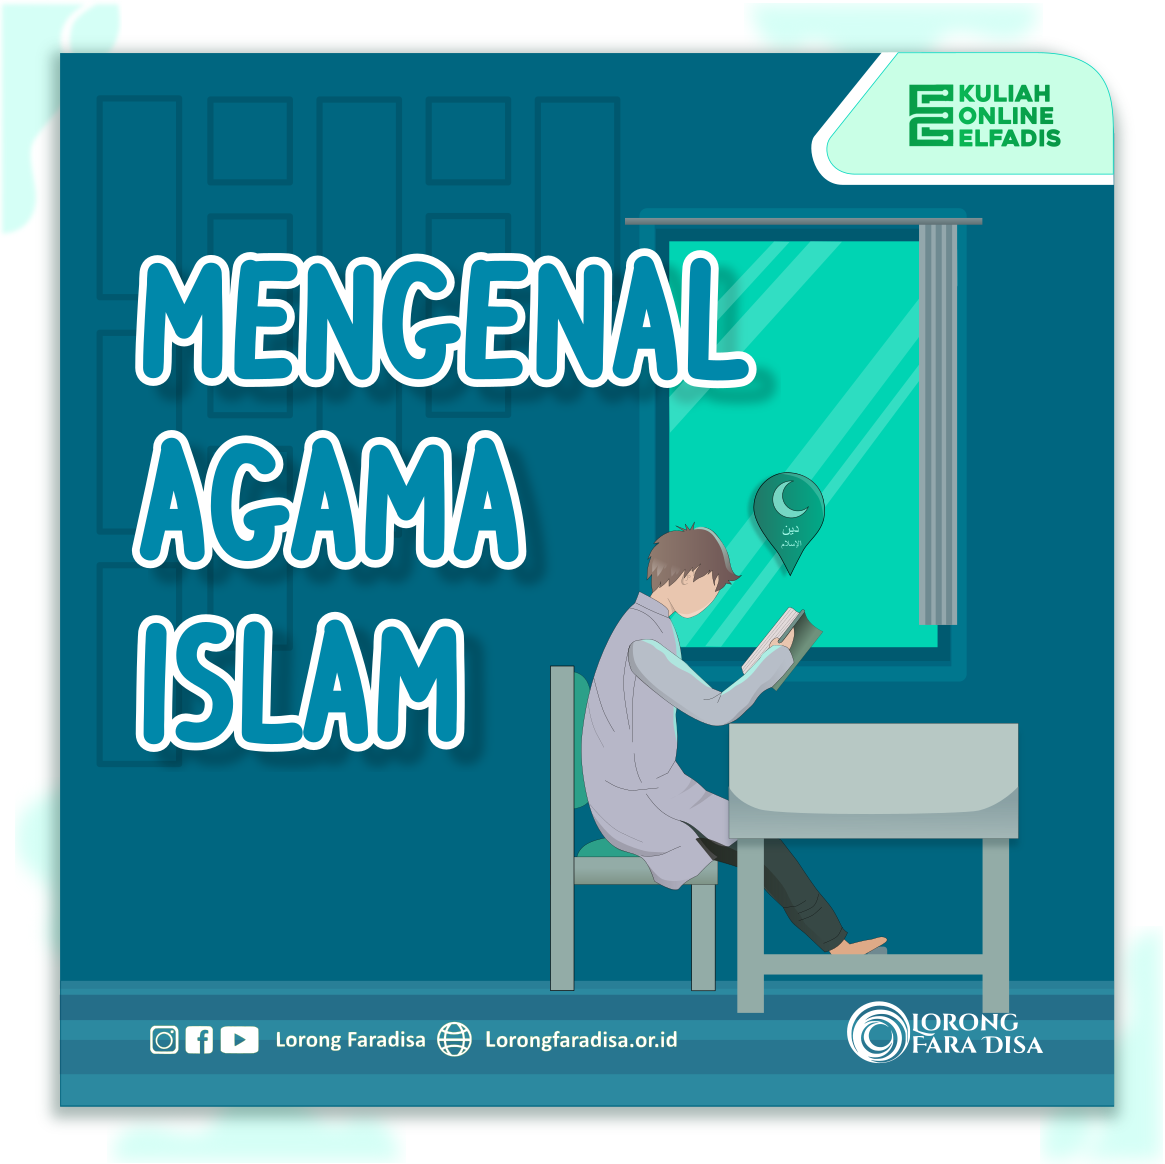 MENGENAL AGAMA ISLAM